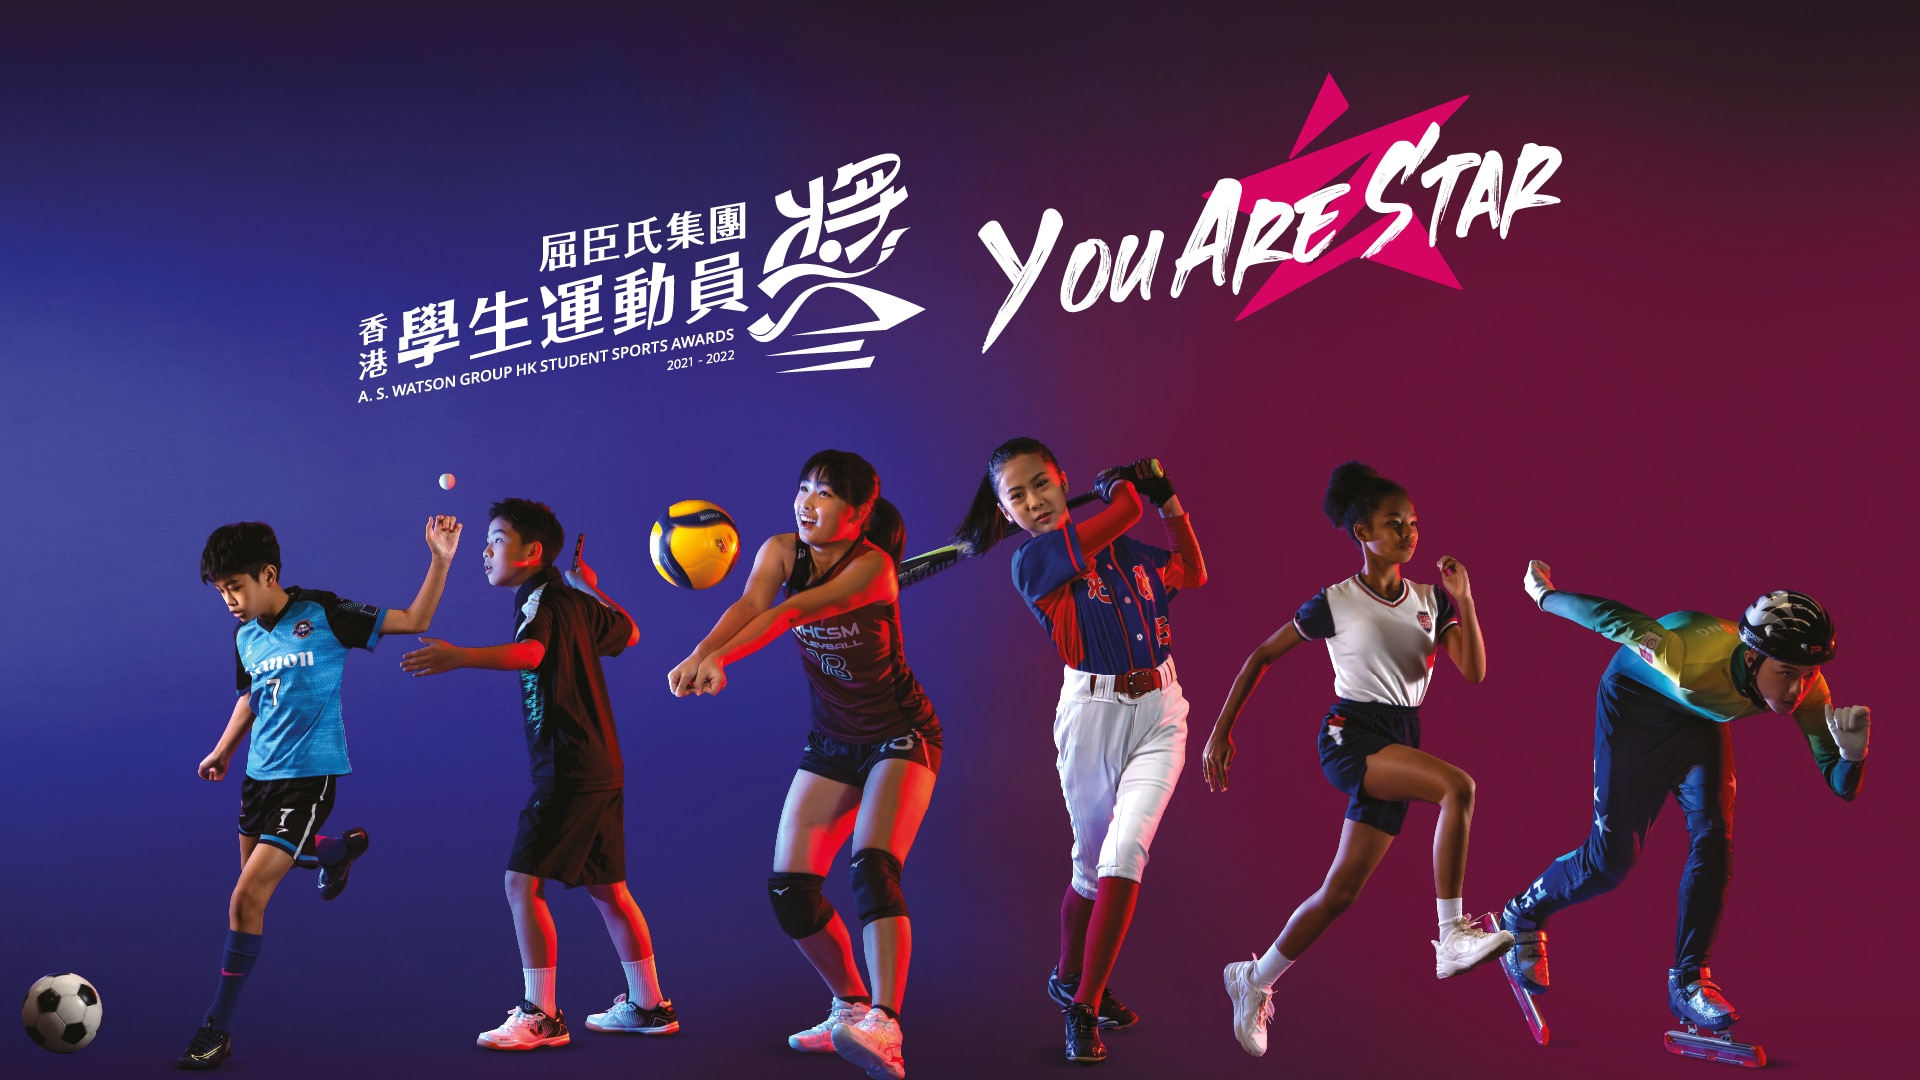 屈臣氏集團香港學生運動員獎推出 NFT STARCERT 獎狀 以嶄新形式鼓勵學生繼續勇敢追夢